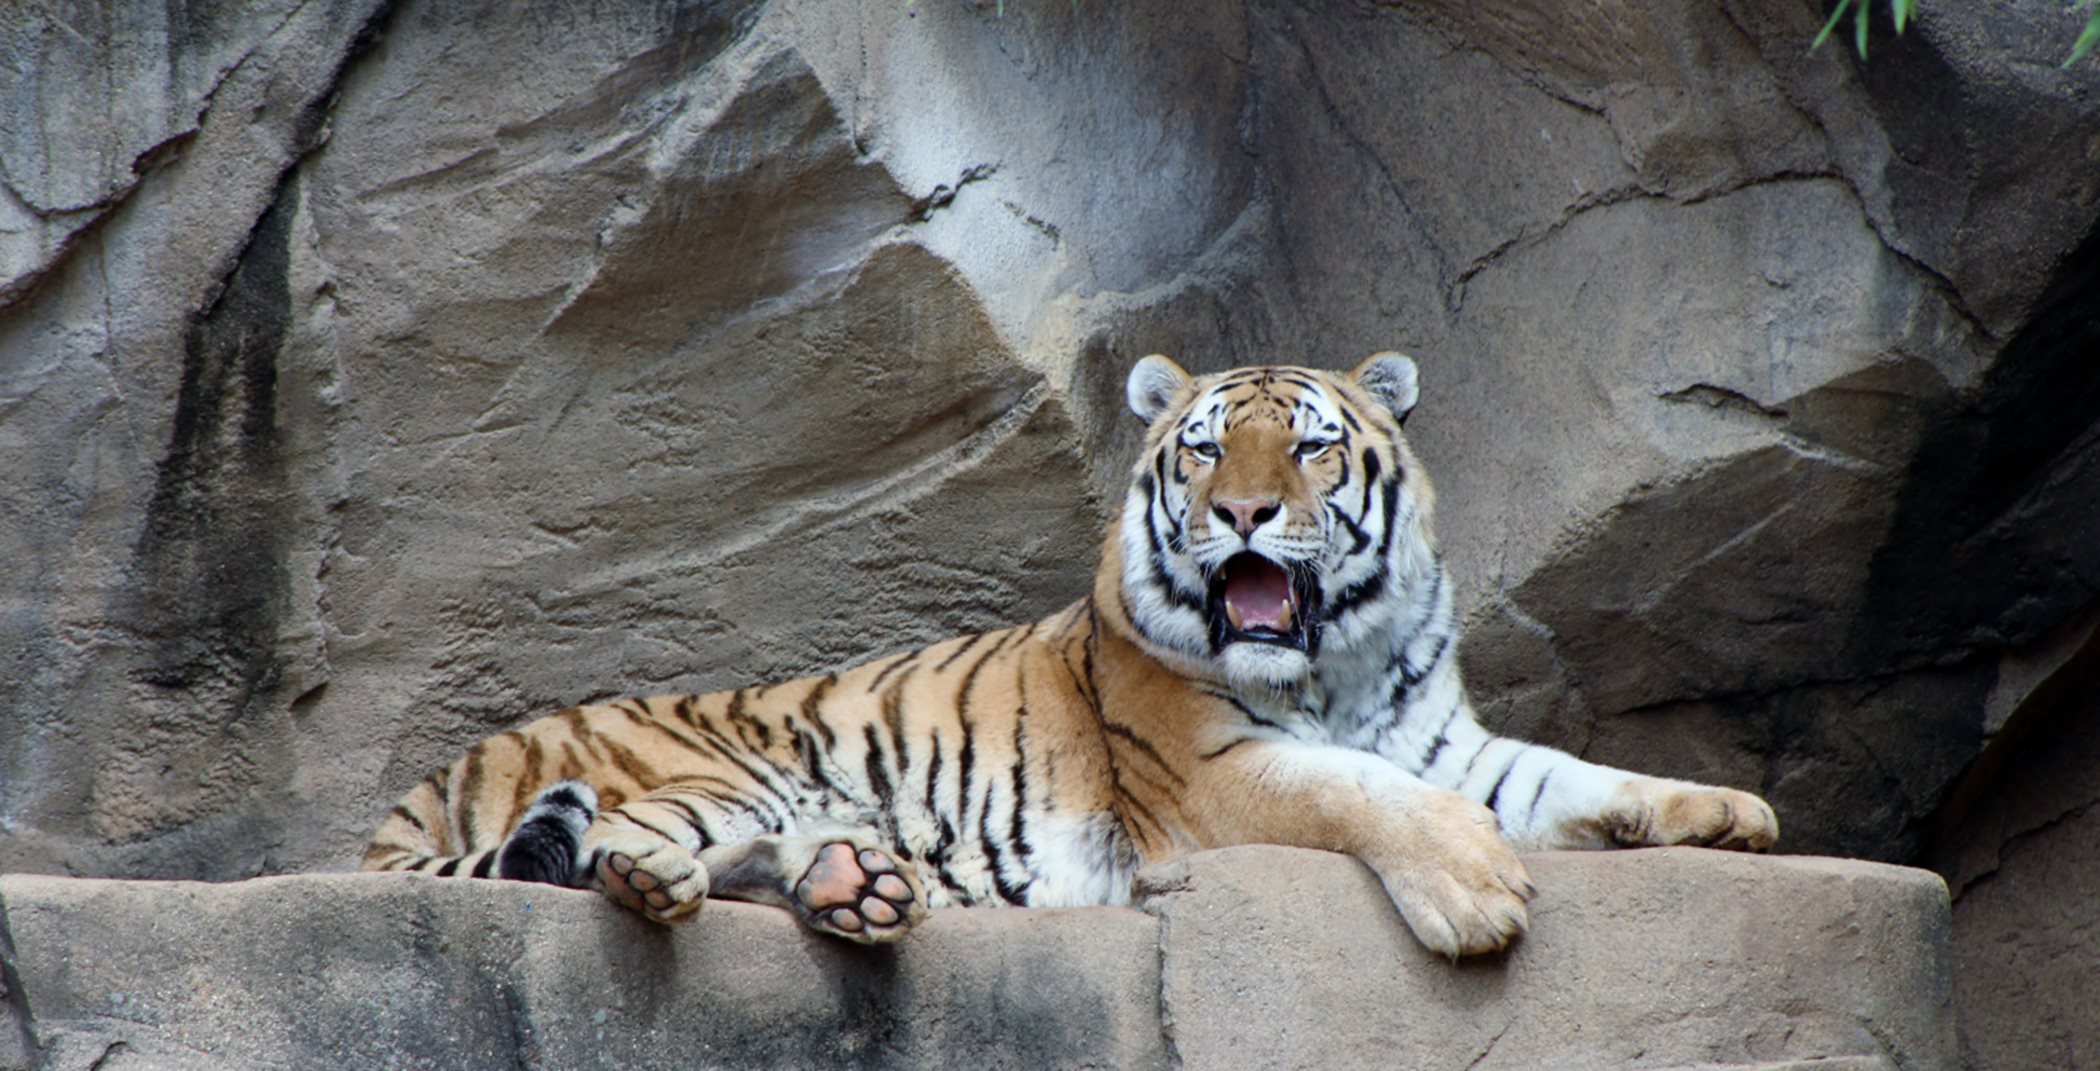 Tiger at Folsom Zoo